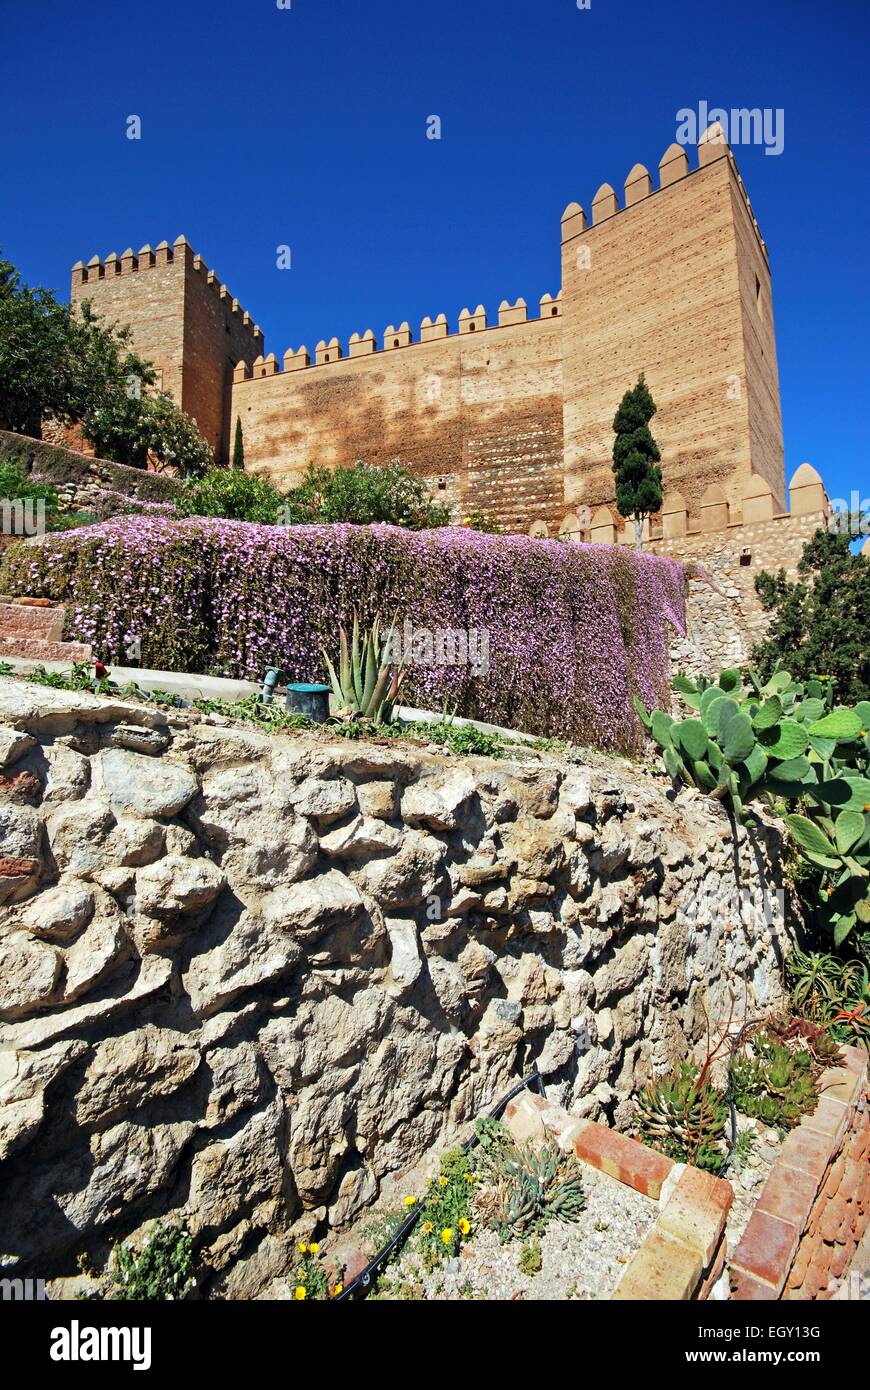 Vista del castello moresco e giardini, Almeria, provincia di Almeria, Andalusia, Spagna, Europa occidentale. Foto Stock